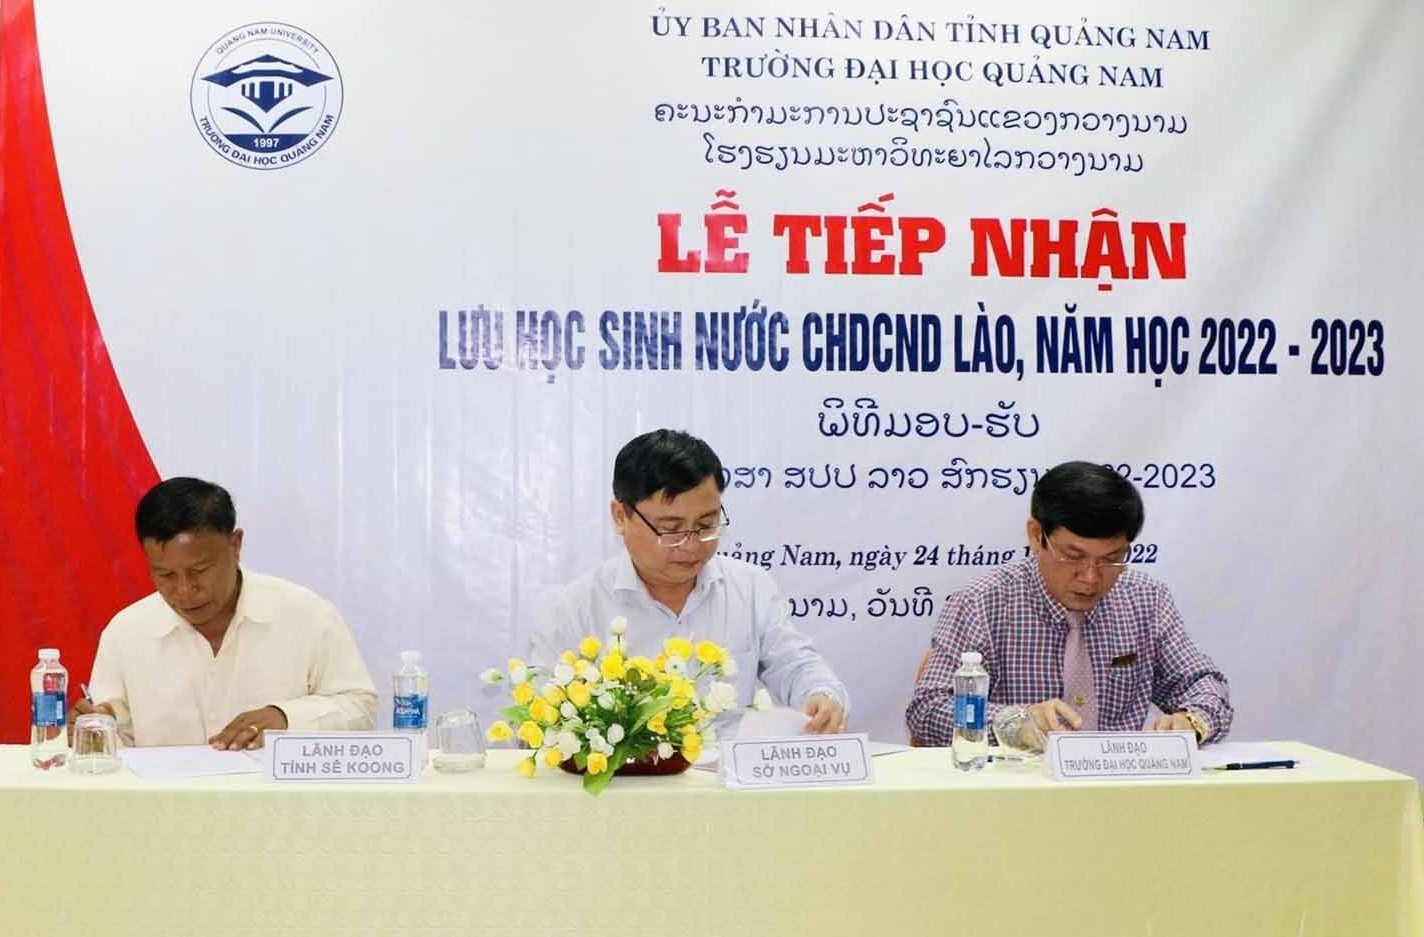 Đại diện Trường Đại học Quảng Nam, Sở Giáo dục tỉnh Sê Kông và Sở Ngoại vụ Quảng Nam ký kết bàn giao lưu học sinh Lào.